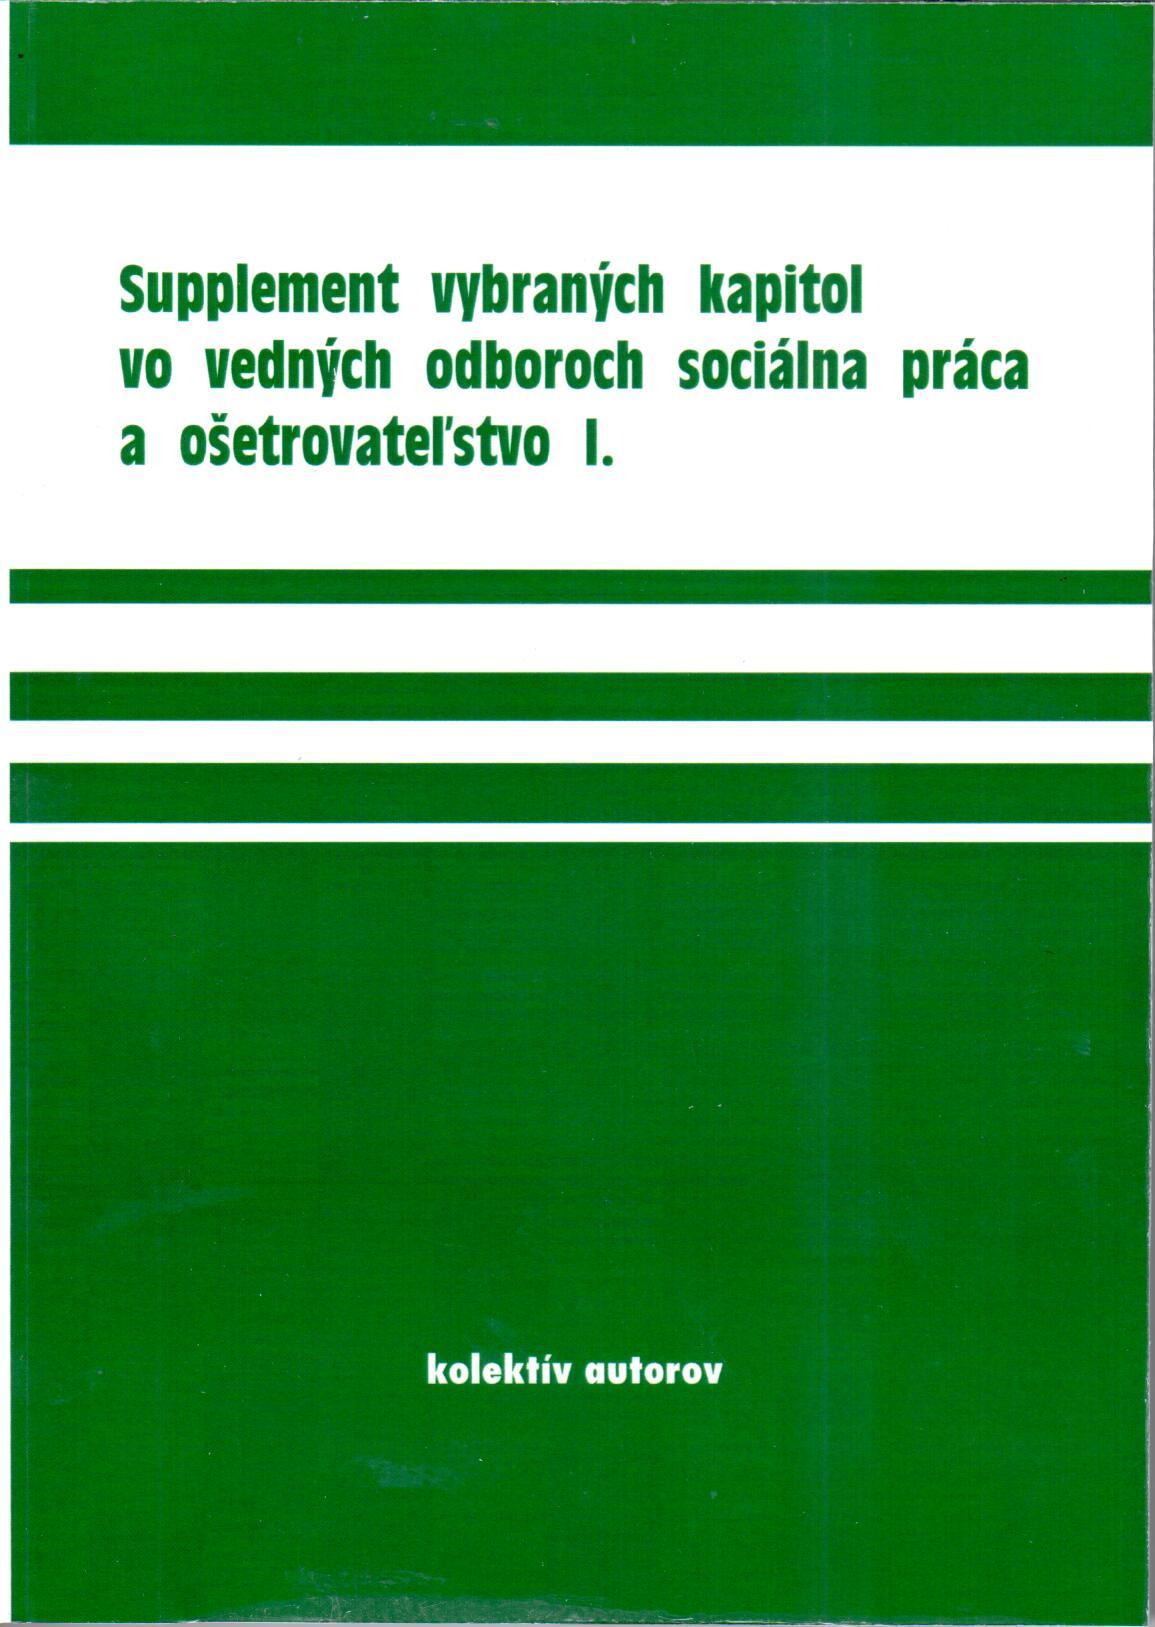 Supplement vybraných kapitol vo vedných odboroch soc. práca a ošetrovateľstvo I.